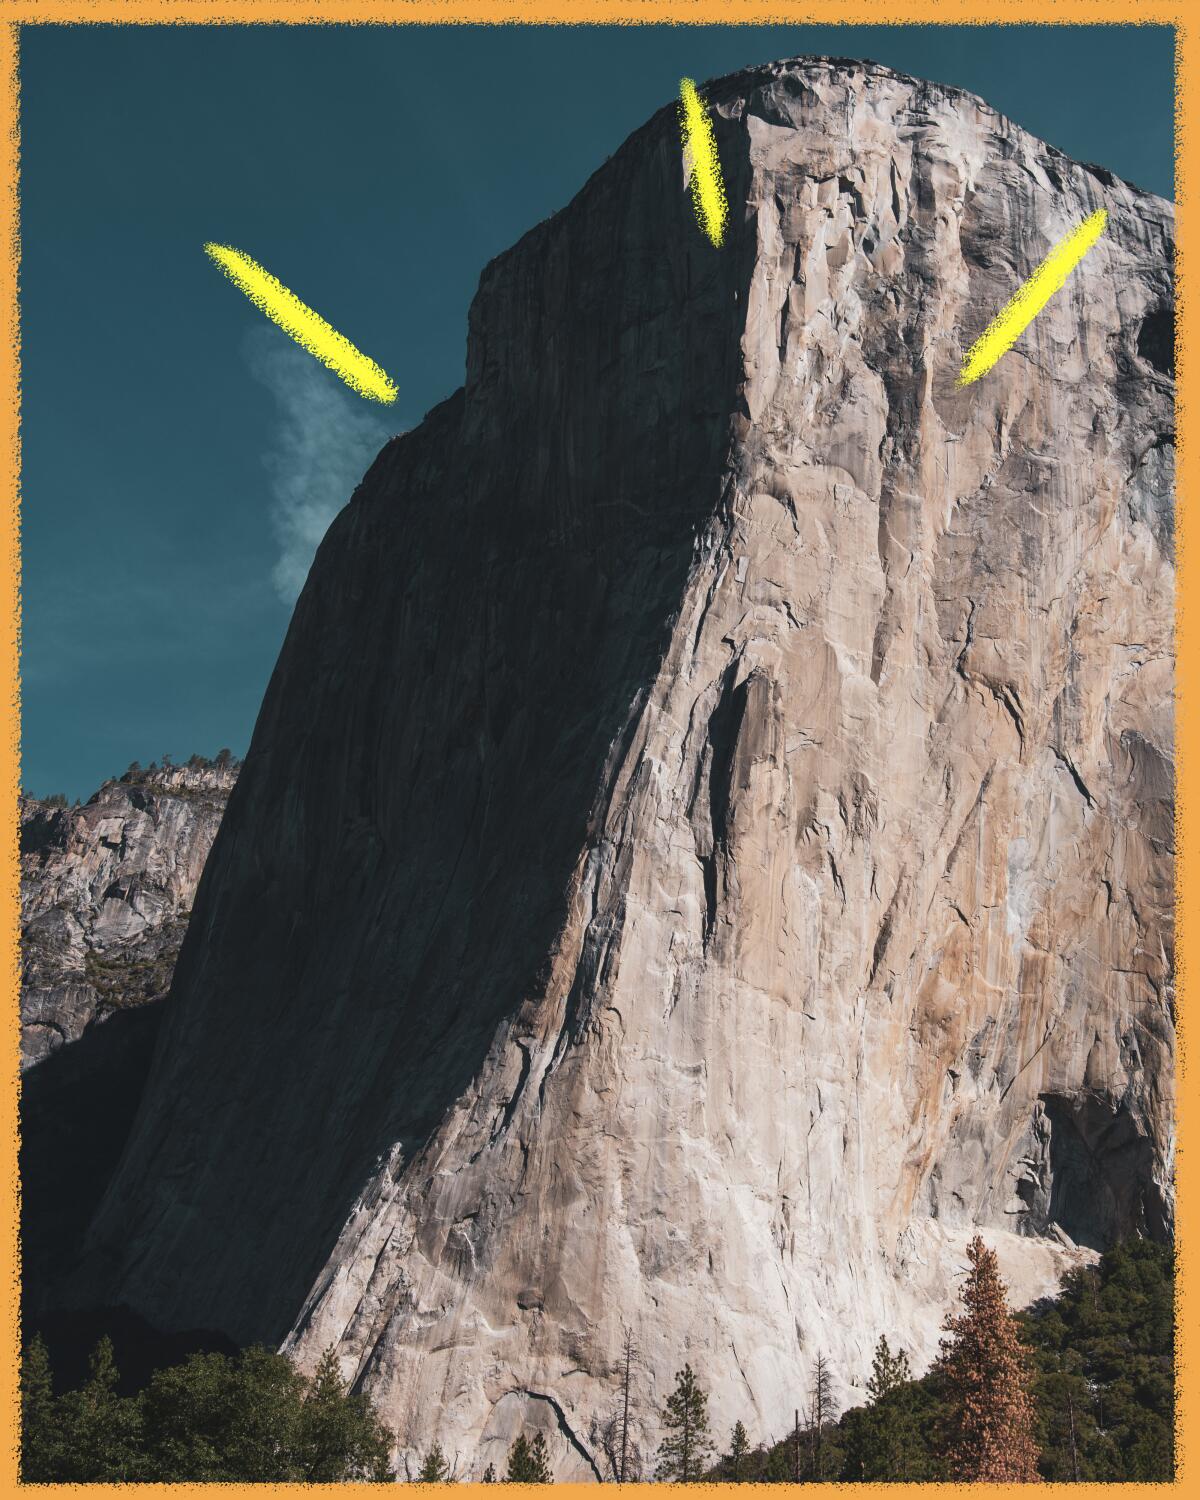 El Capitan, Yosemite National Park.